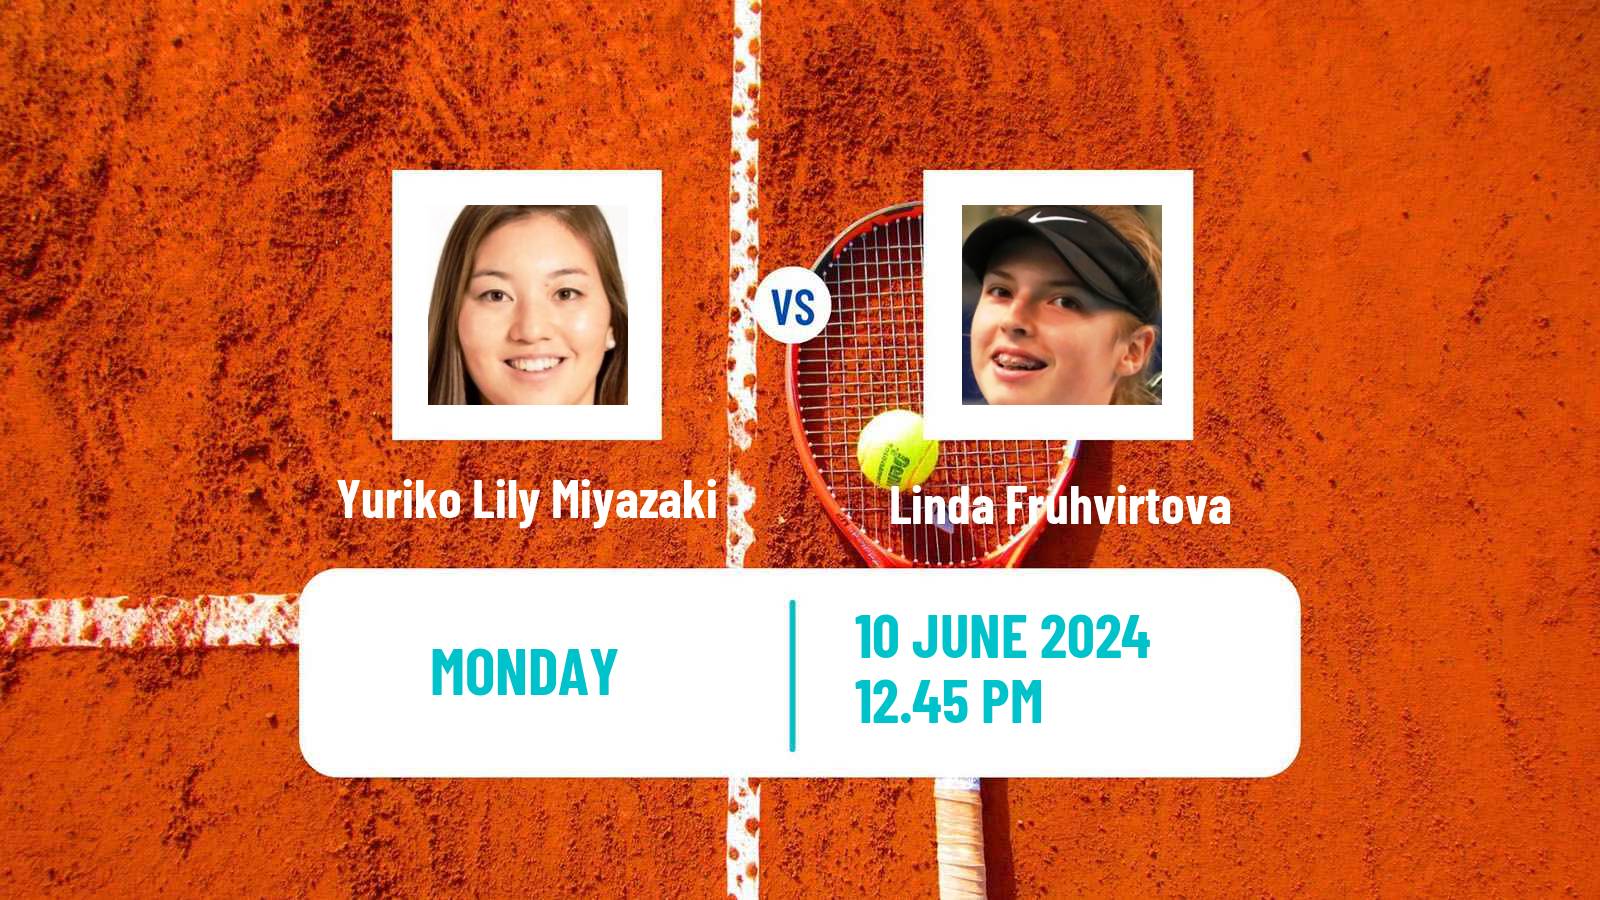 Tennis WTA Nottingham Yuriko Lily Miyazaki - Linda Fruhvirtova